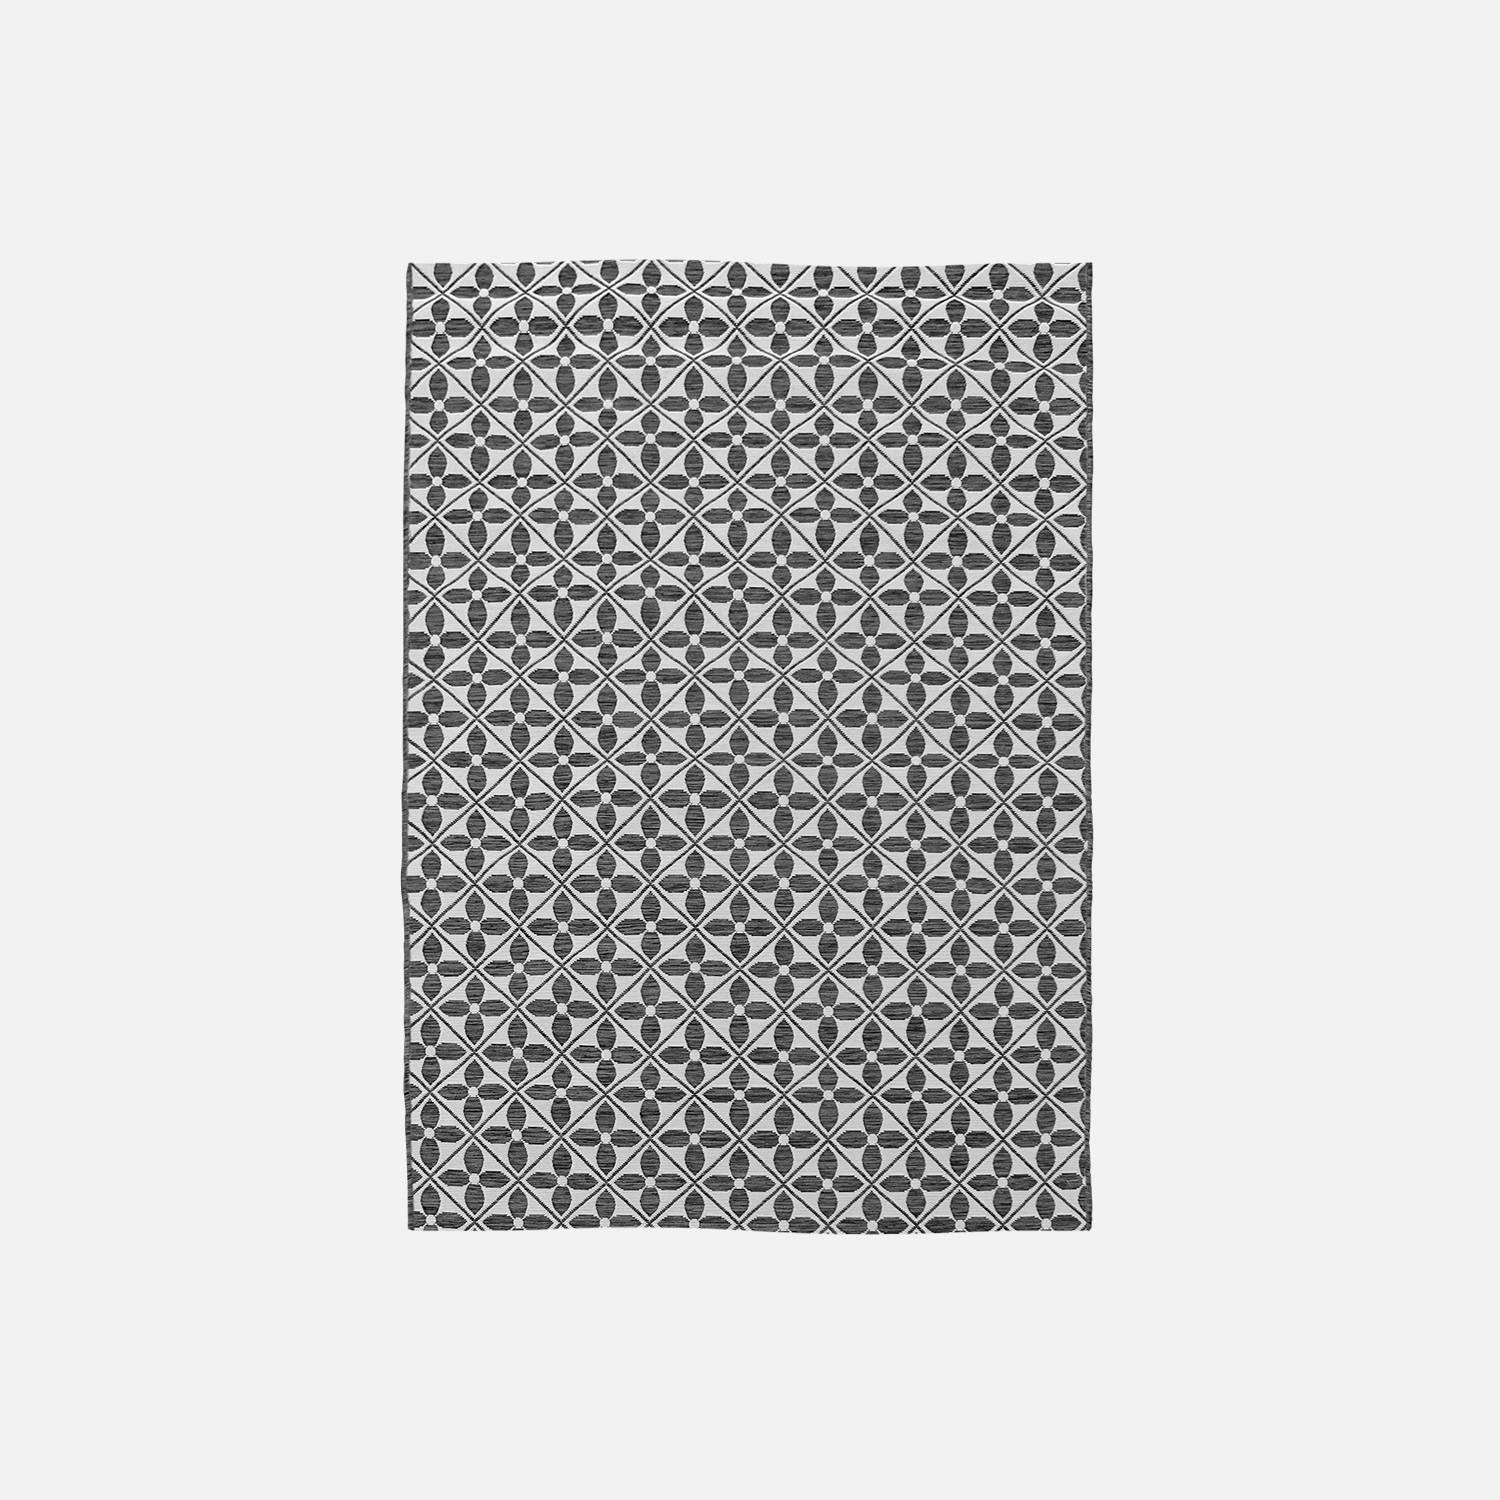 Tapis extérieur/intérieur 160 x 230 cm, densité 1,15 kg/m2, motif carreaux de ciment, traité anti UV, toutes saisons Photo3